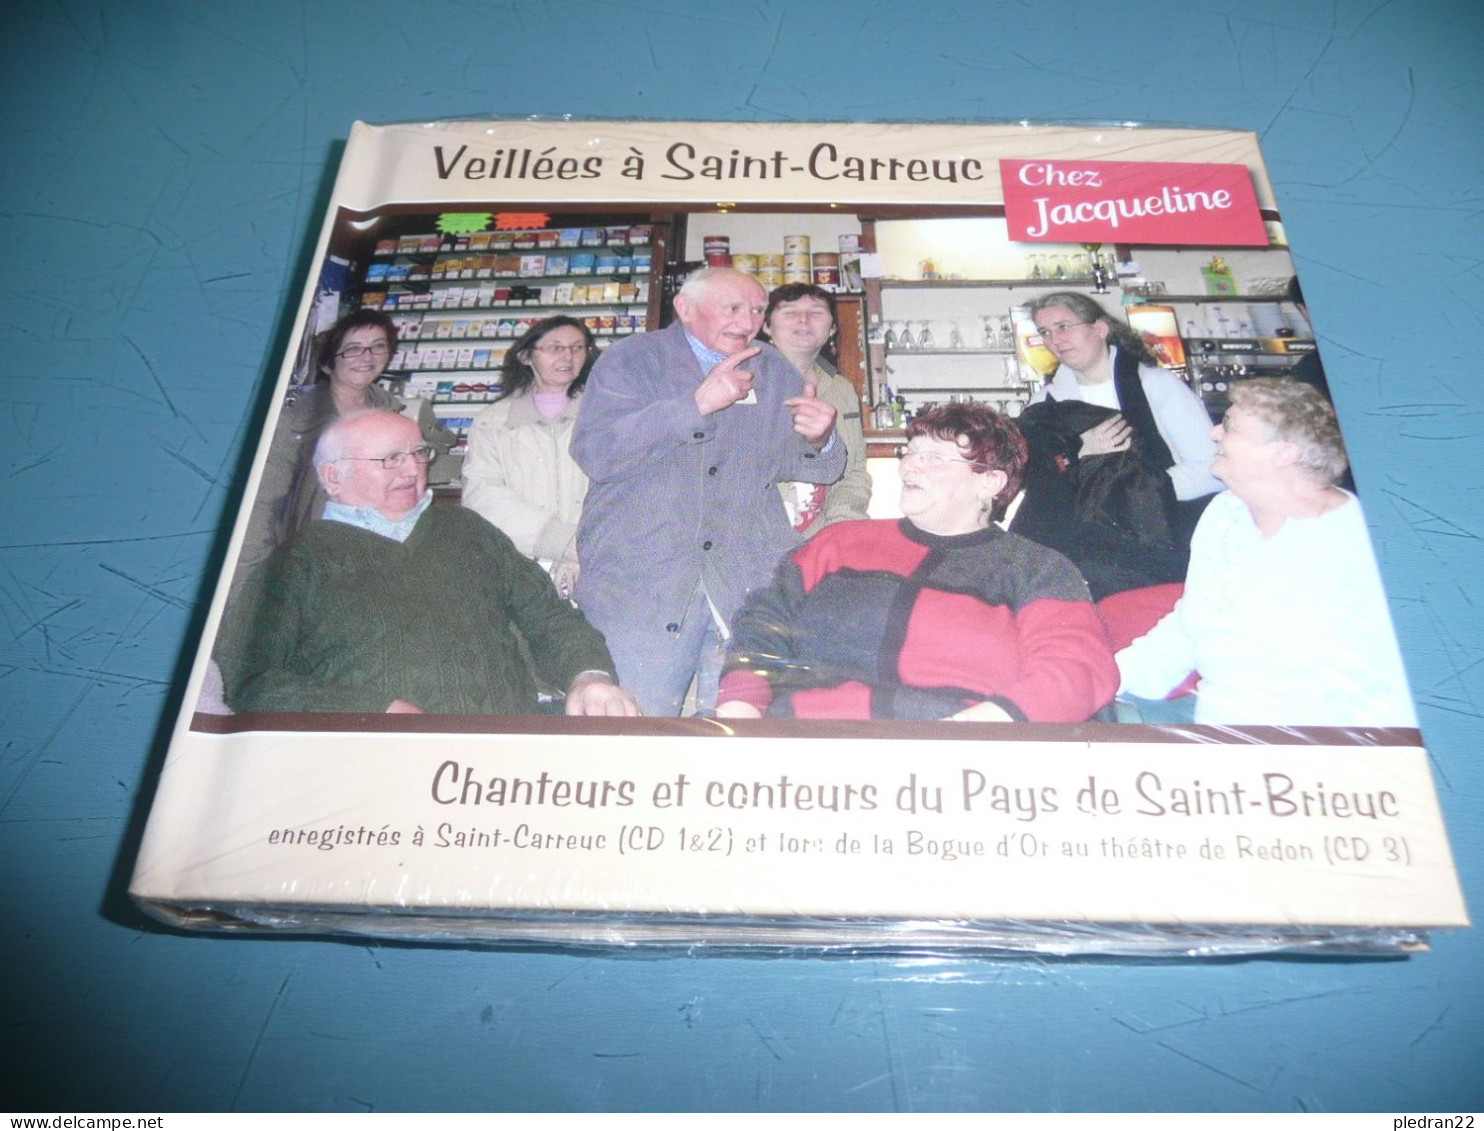 BRETAGNE GALLO CHANTEURS ET CONTEURS DU PAYS DE SAINT BRIEUC COTES DU NORD D'ARMOR VEILLEES A SAINT CARREUC 3 CD 2009 - Musiques Du Monde